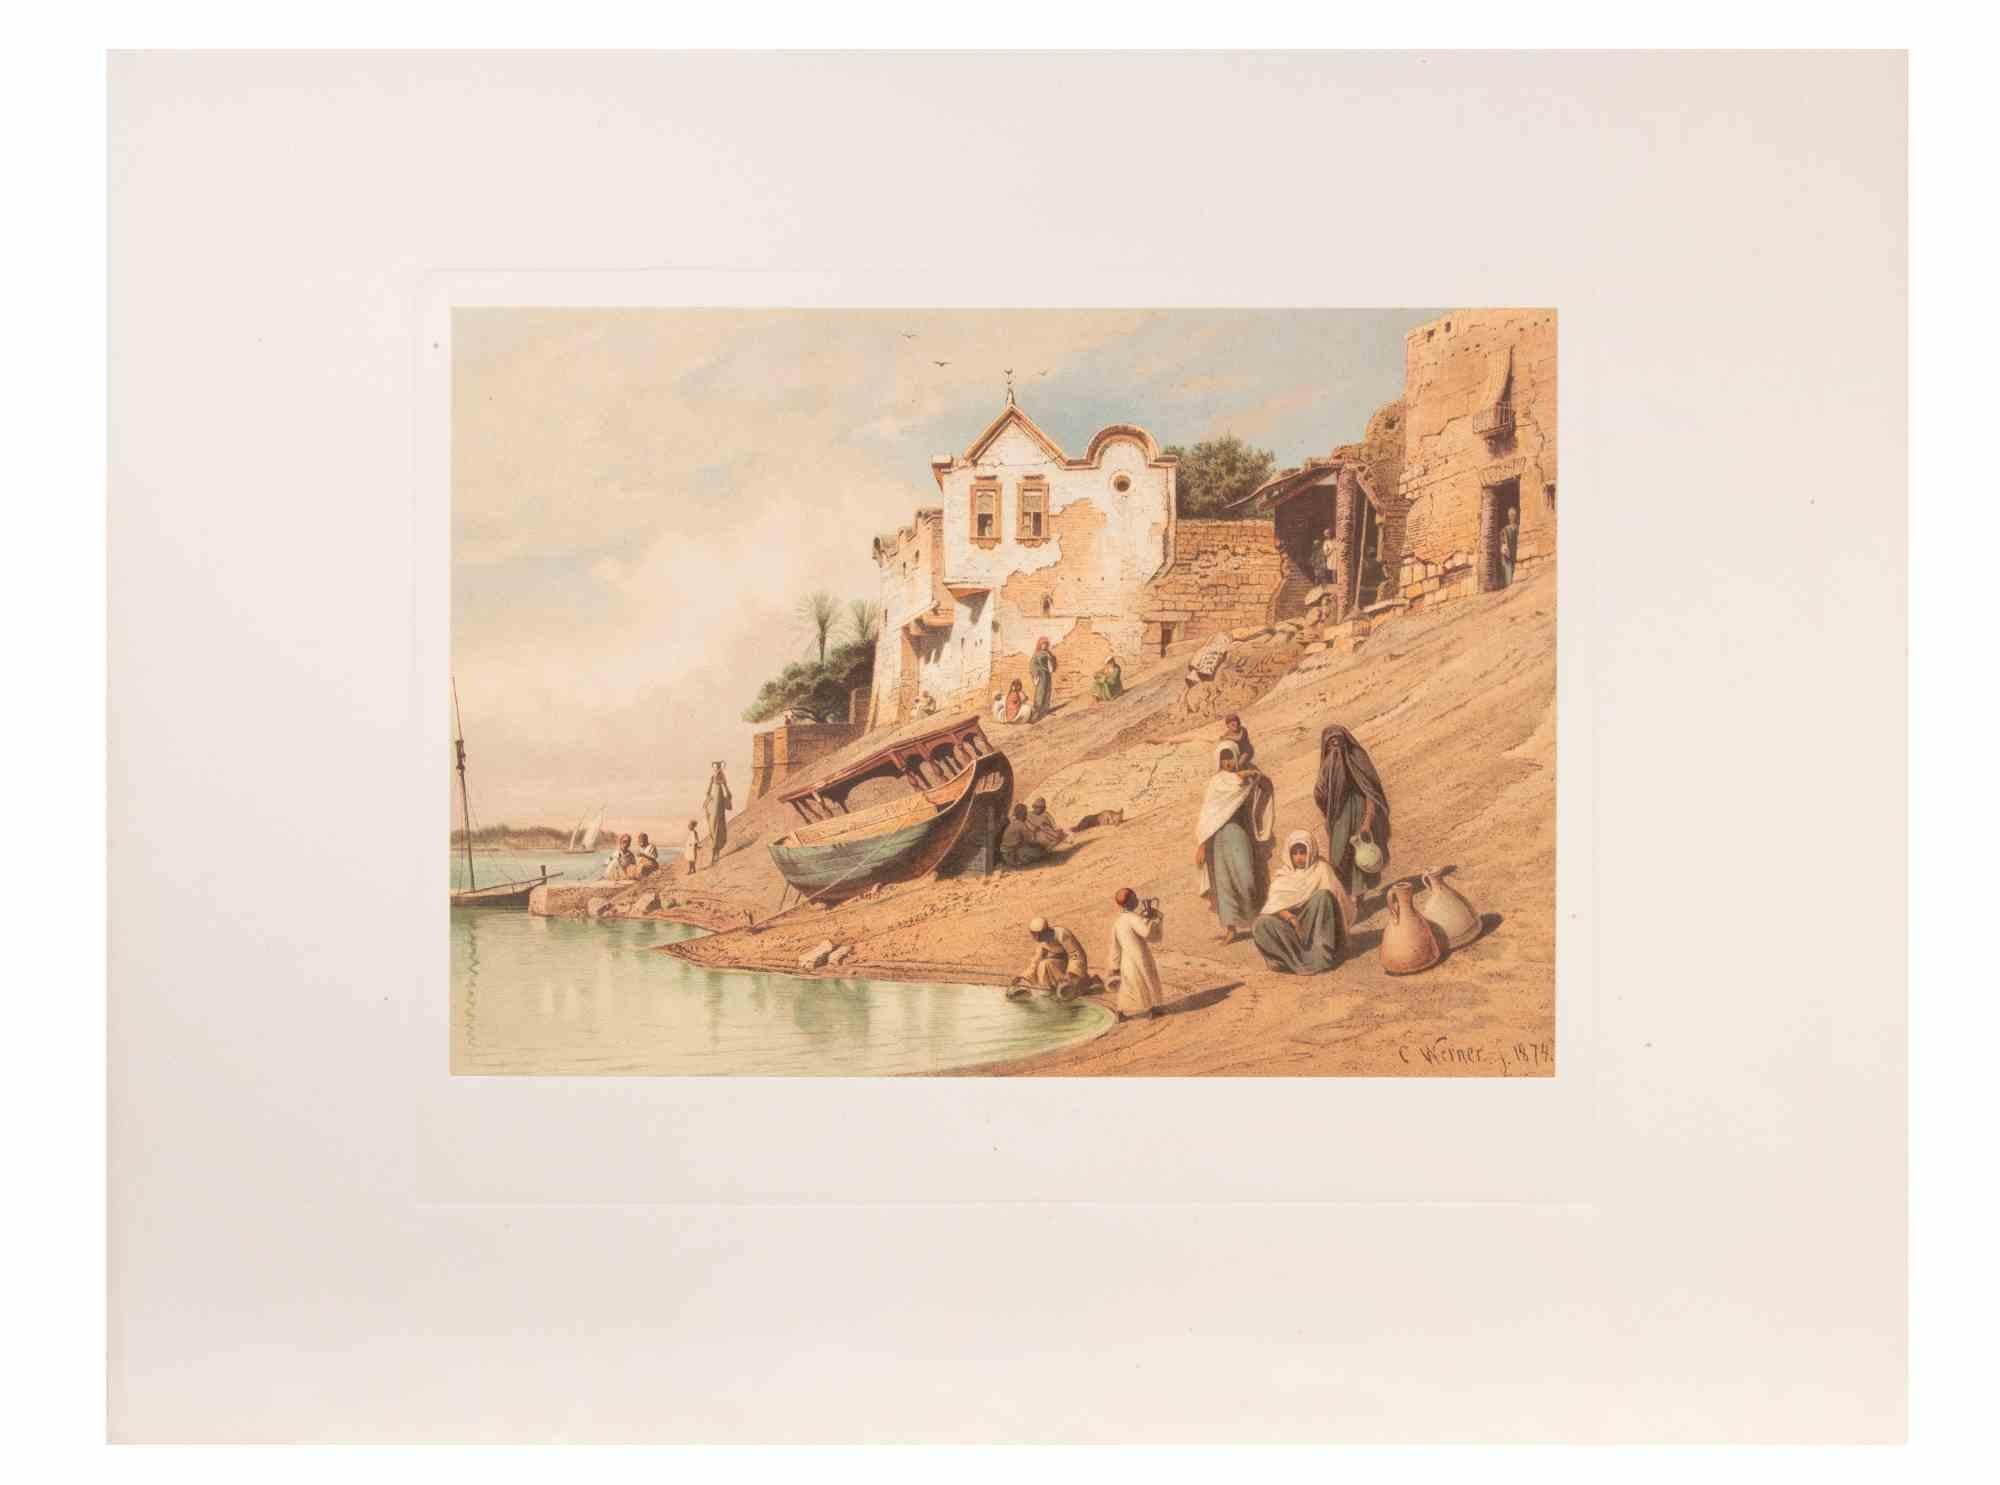 Égyptiens le long du Nil est une œuvre d'art moderne réalisée d'après Karl Werner.

Cromolithographie en couleurs mixtes. 

L'œuvre est d'après les aquarelles réalisées par l'artiste lors d'un voyage en Égypte entre 1862 et 1865.

Cette édition date